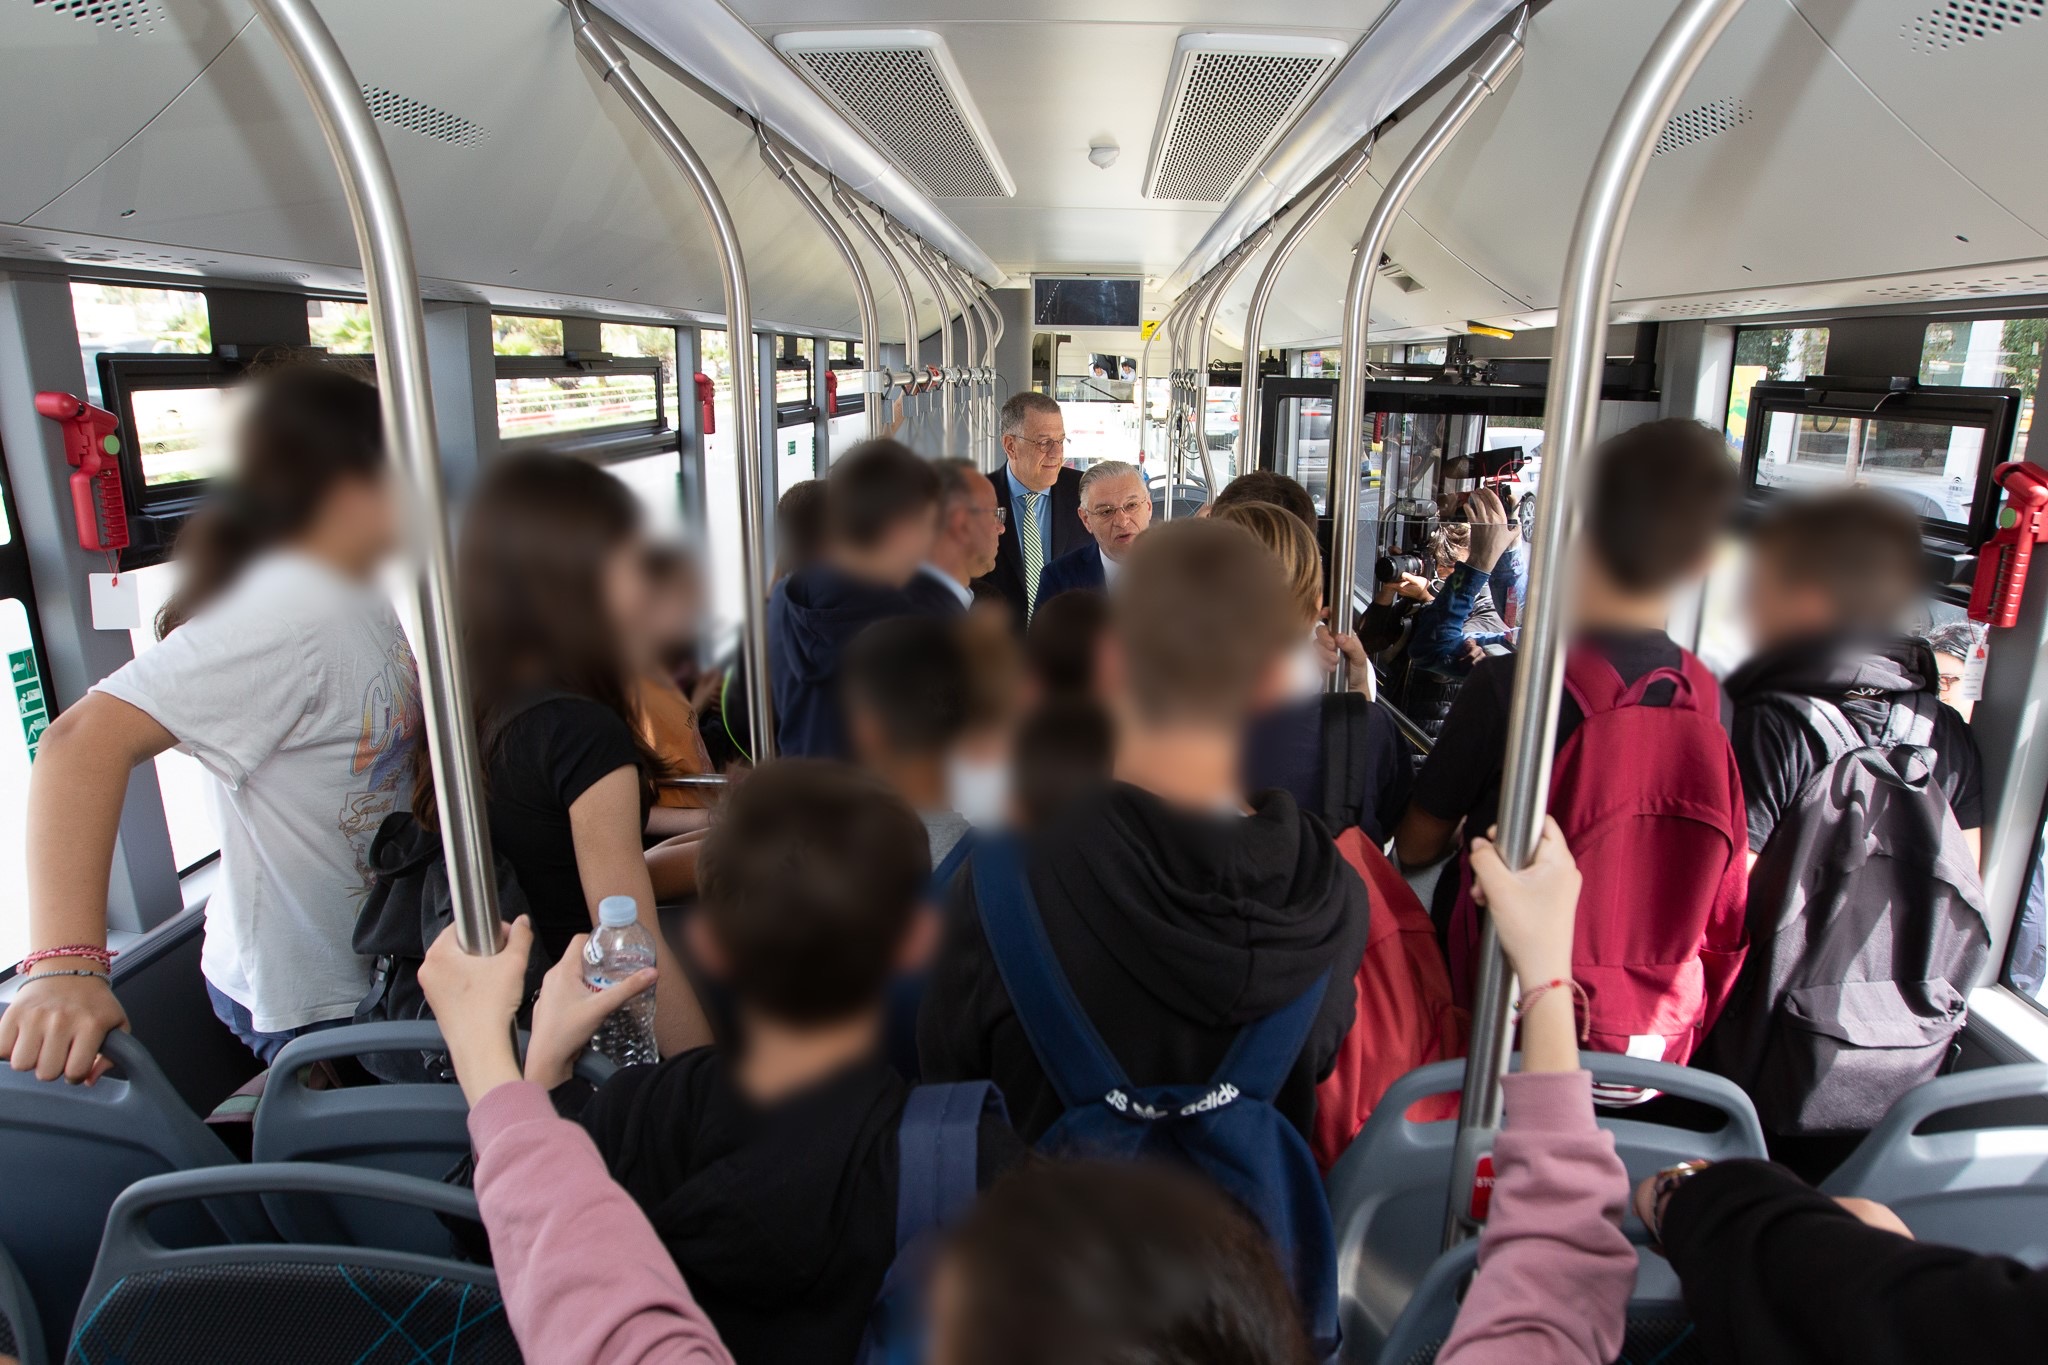 Πρώτο δοκιμαστικό δρομολόγιο ηλεκτρικών λεωφορείων της ΟΣΥ με επιβάτες Σταϊκούρα και Ταχιάο